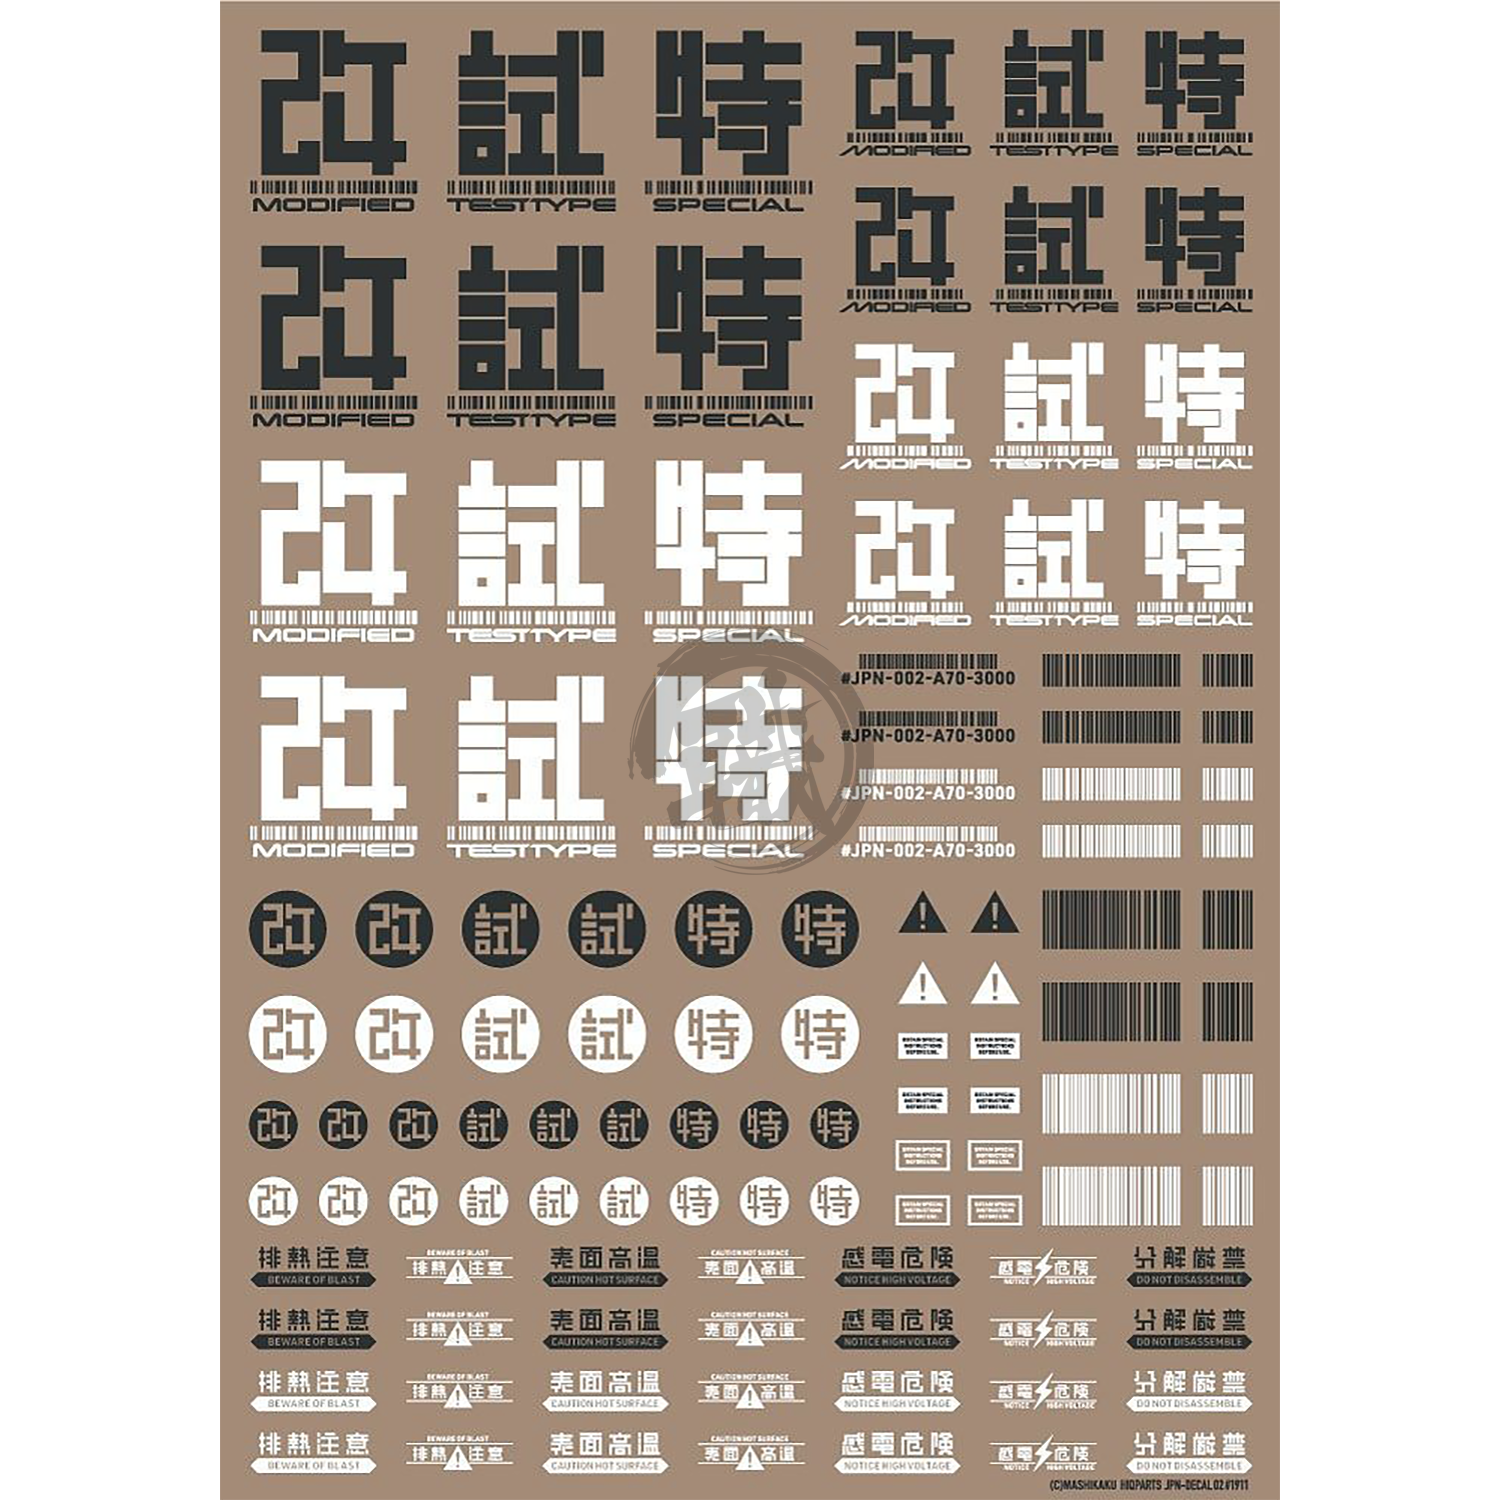 HIQParts - JPN-02 Kanji [Dark Grey] - ShokuninGunpla